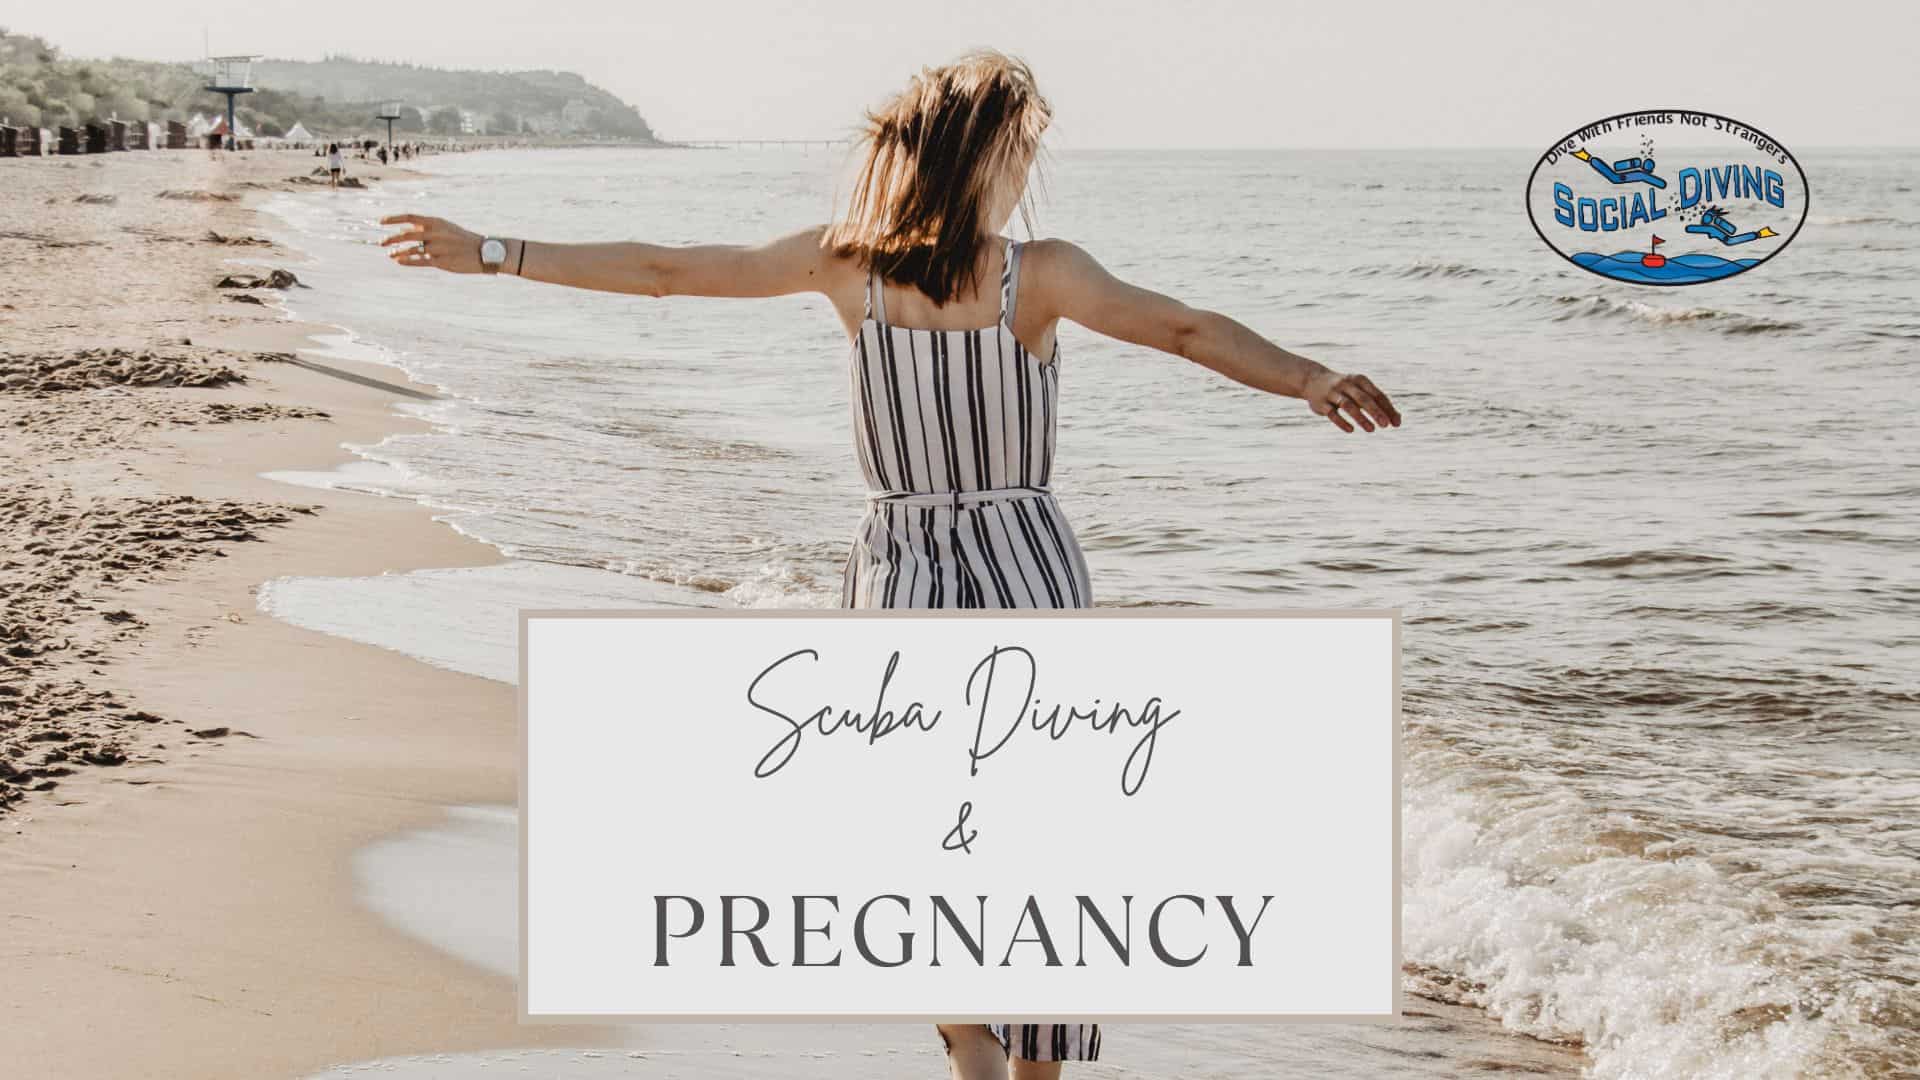 Scuba Diving & Pregnancy